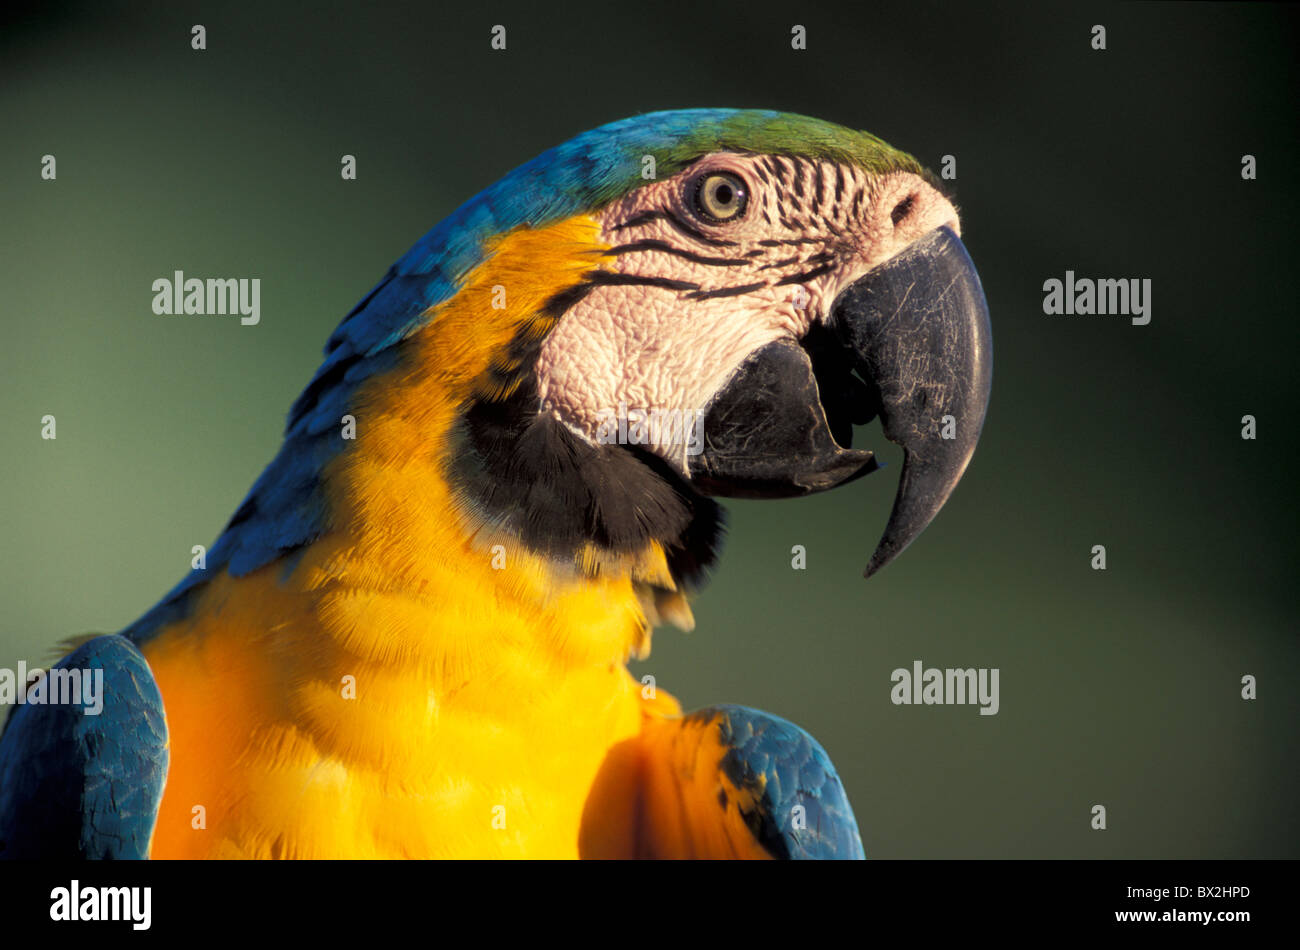 Bleu Jaune Macaw Ara ararauna Rio Negro en amont de Manaus Amazon Brésil Amérique du Sud oiseaux animaux Banque D'Images